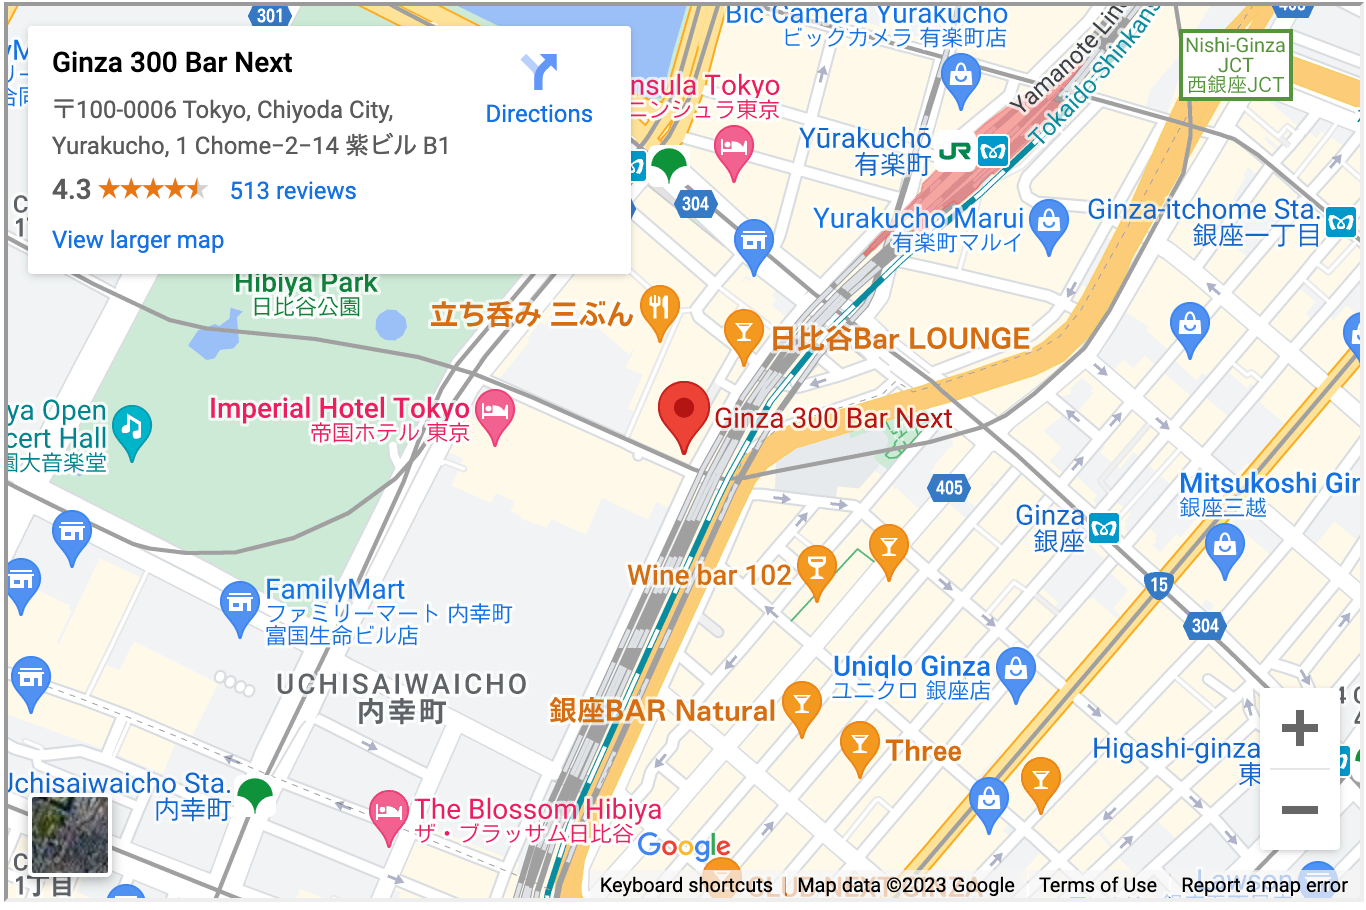 1 月 19 日に東京の Ginza 300 Bar Next で開催される GaijinPot Meet Party に参加してください